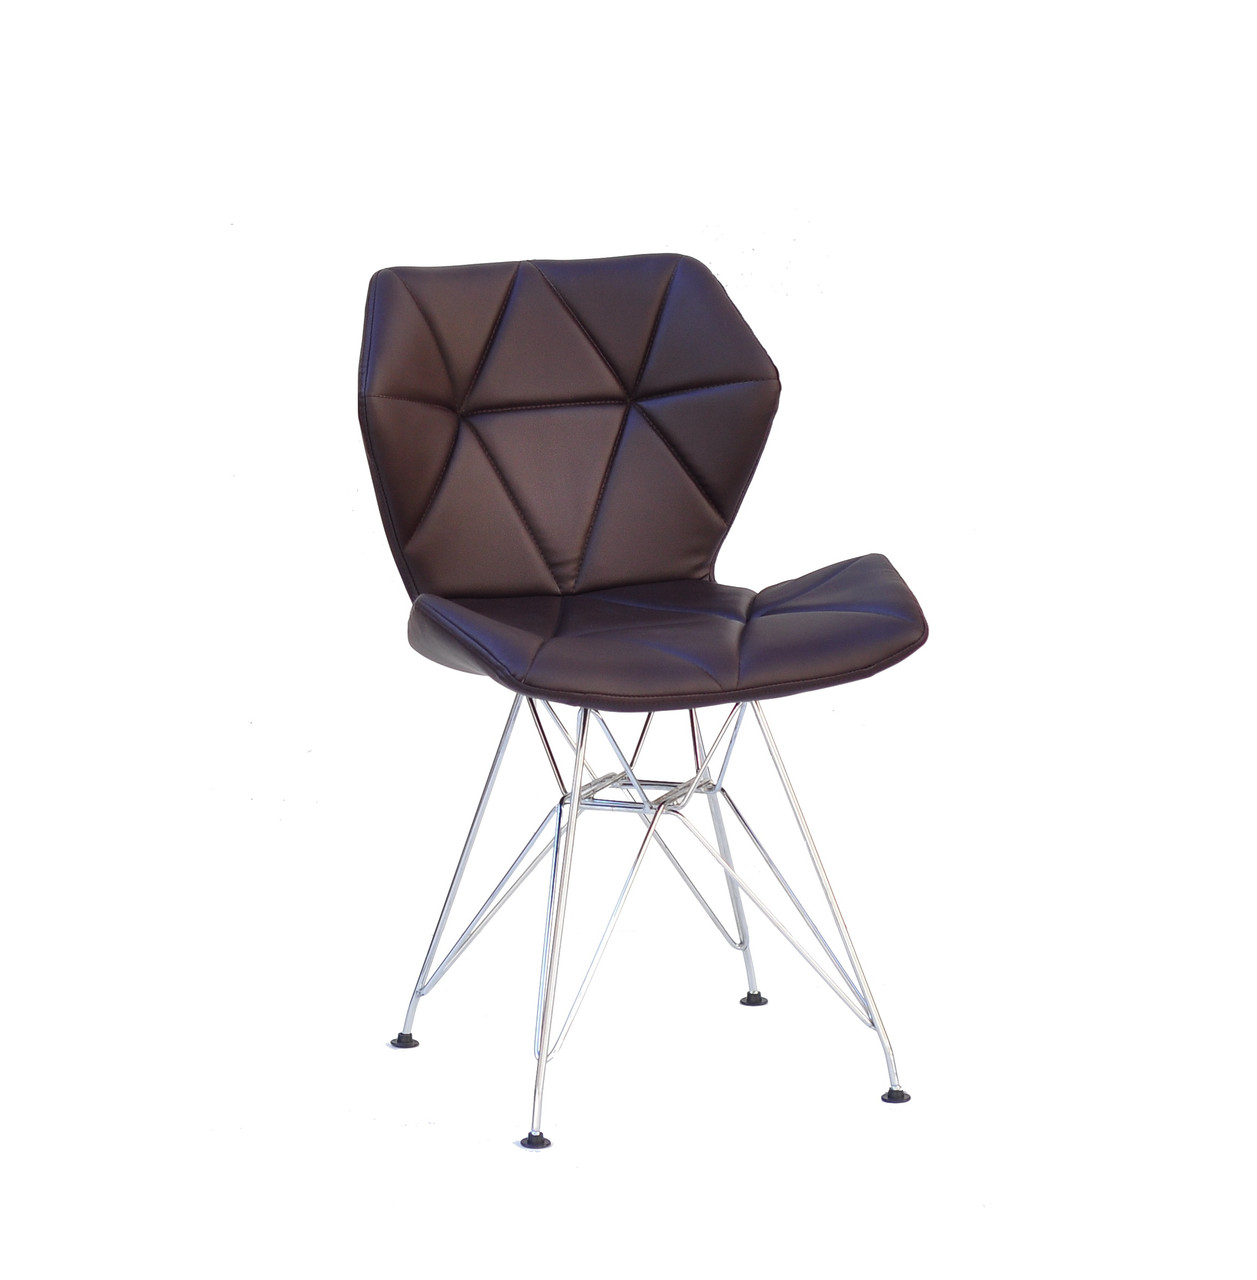 Cтильный и современный стул эко-кожа коричневая Greg CH-ML на металлически ножках